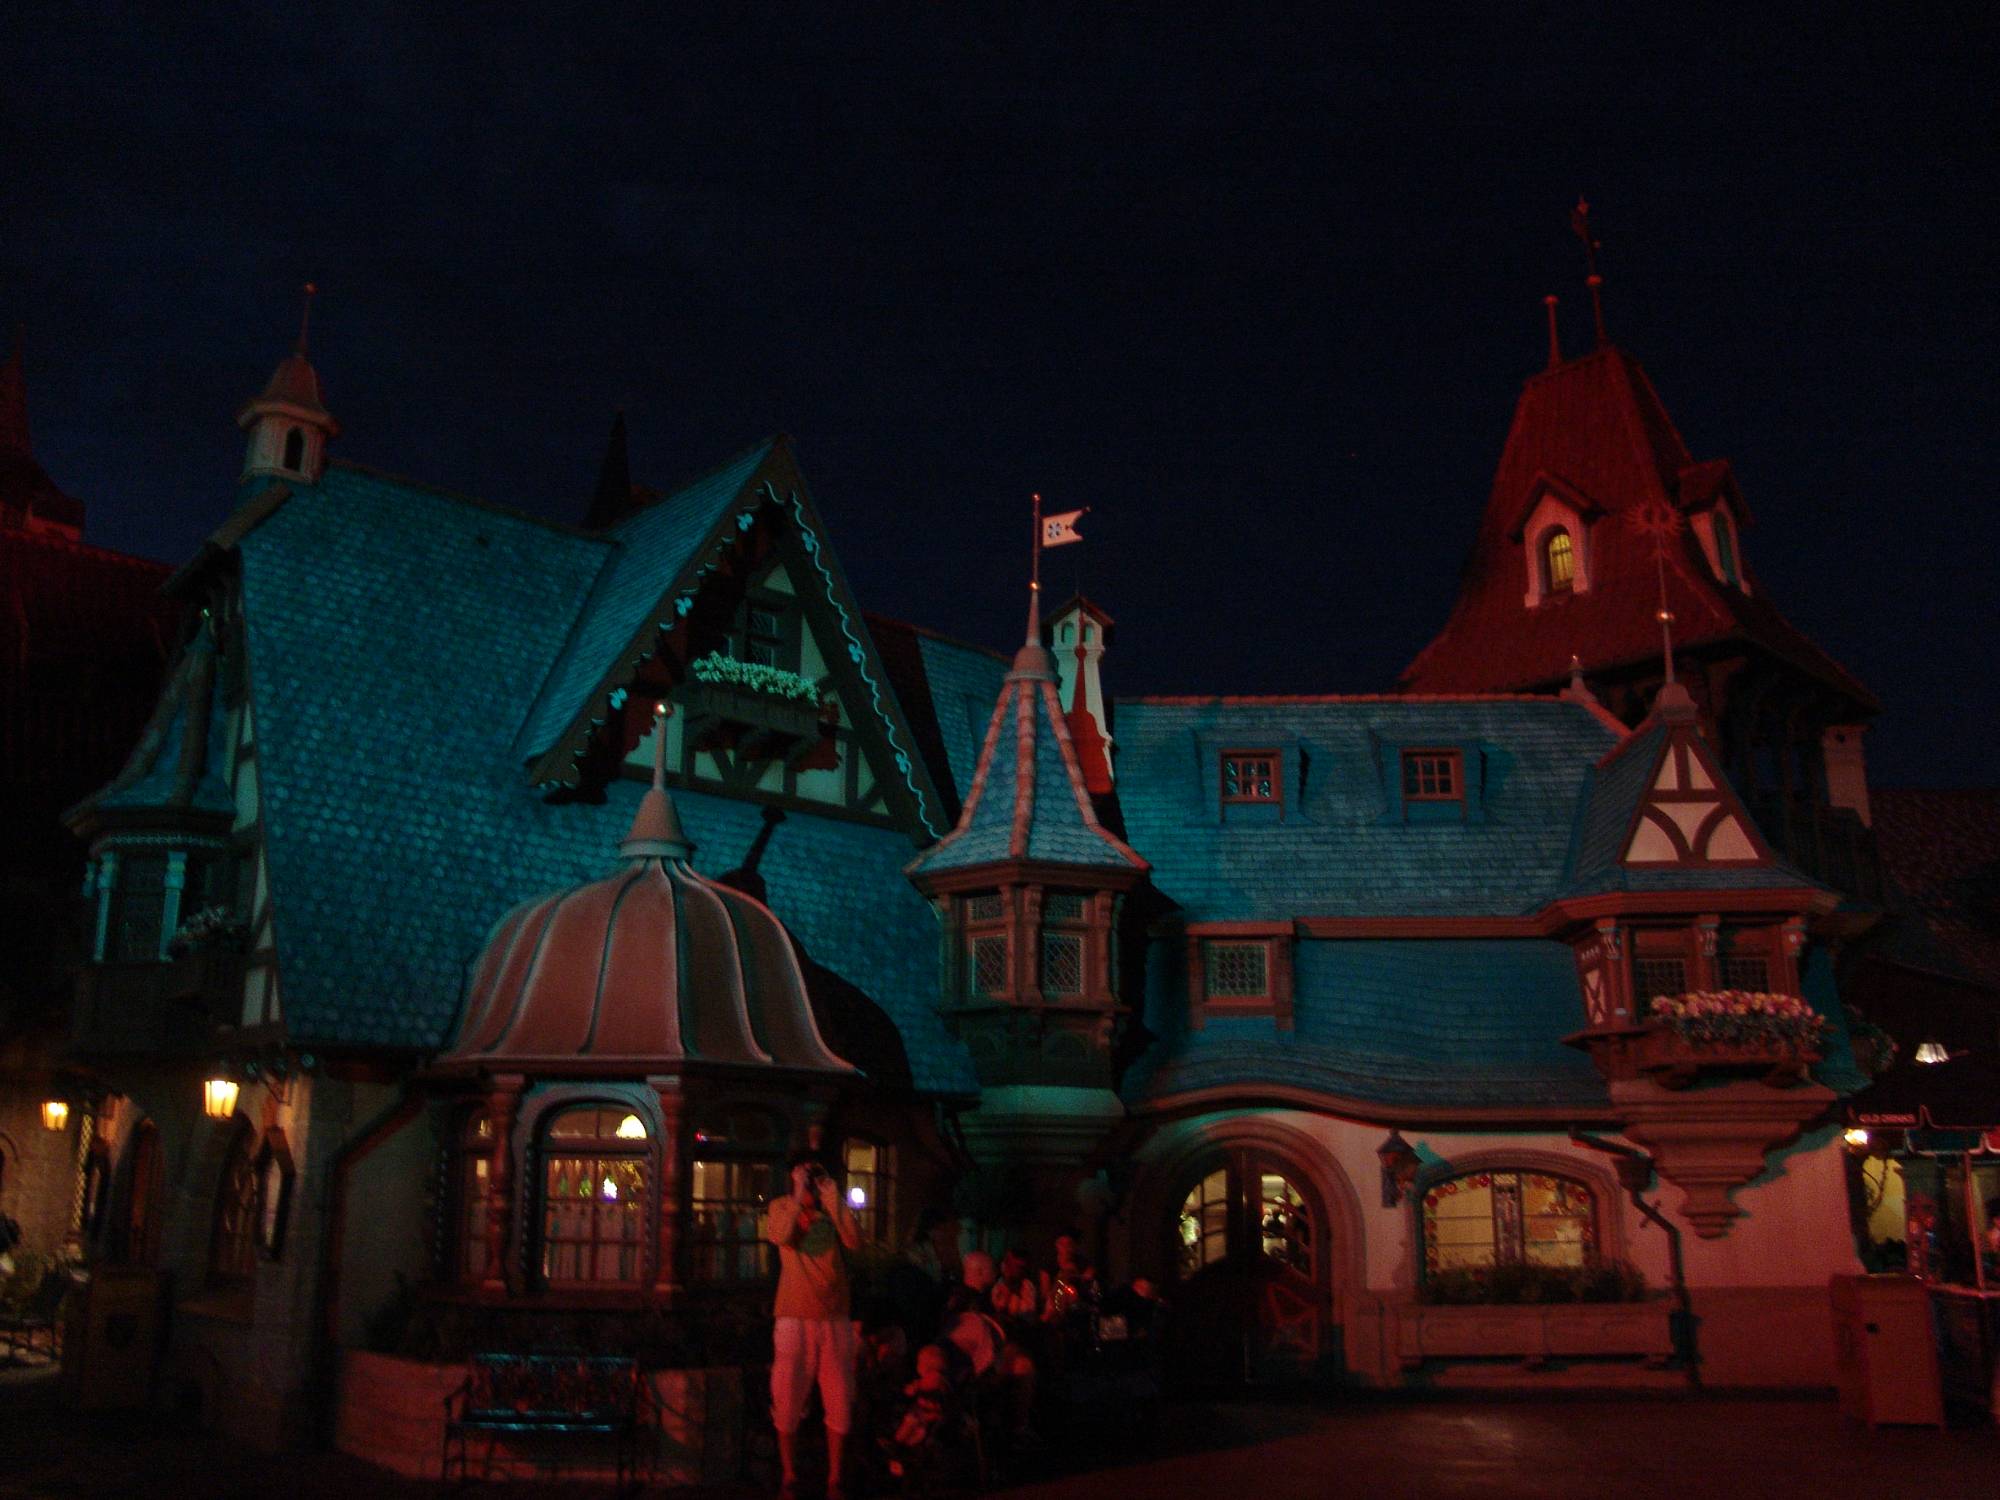 Magic Kingdom - Fantasyland at night